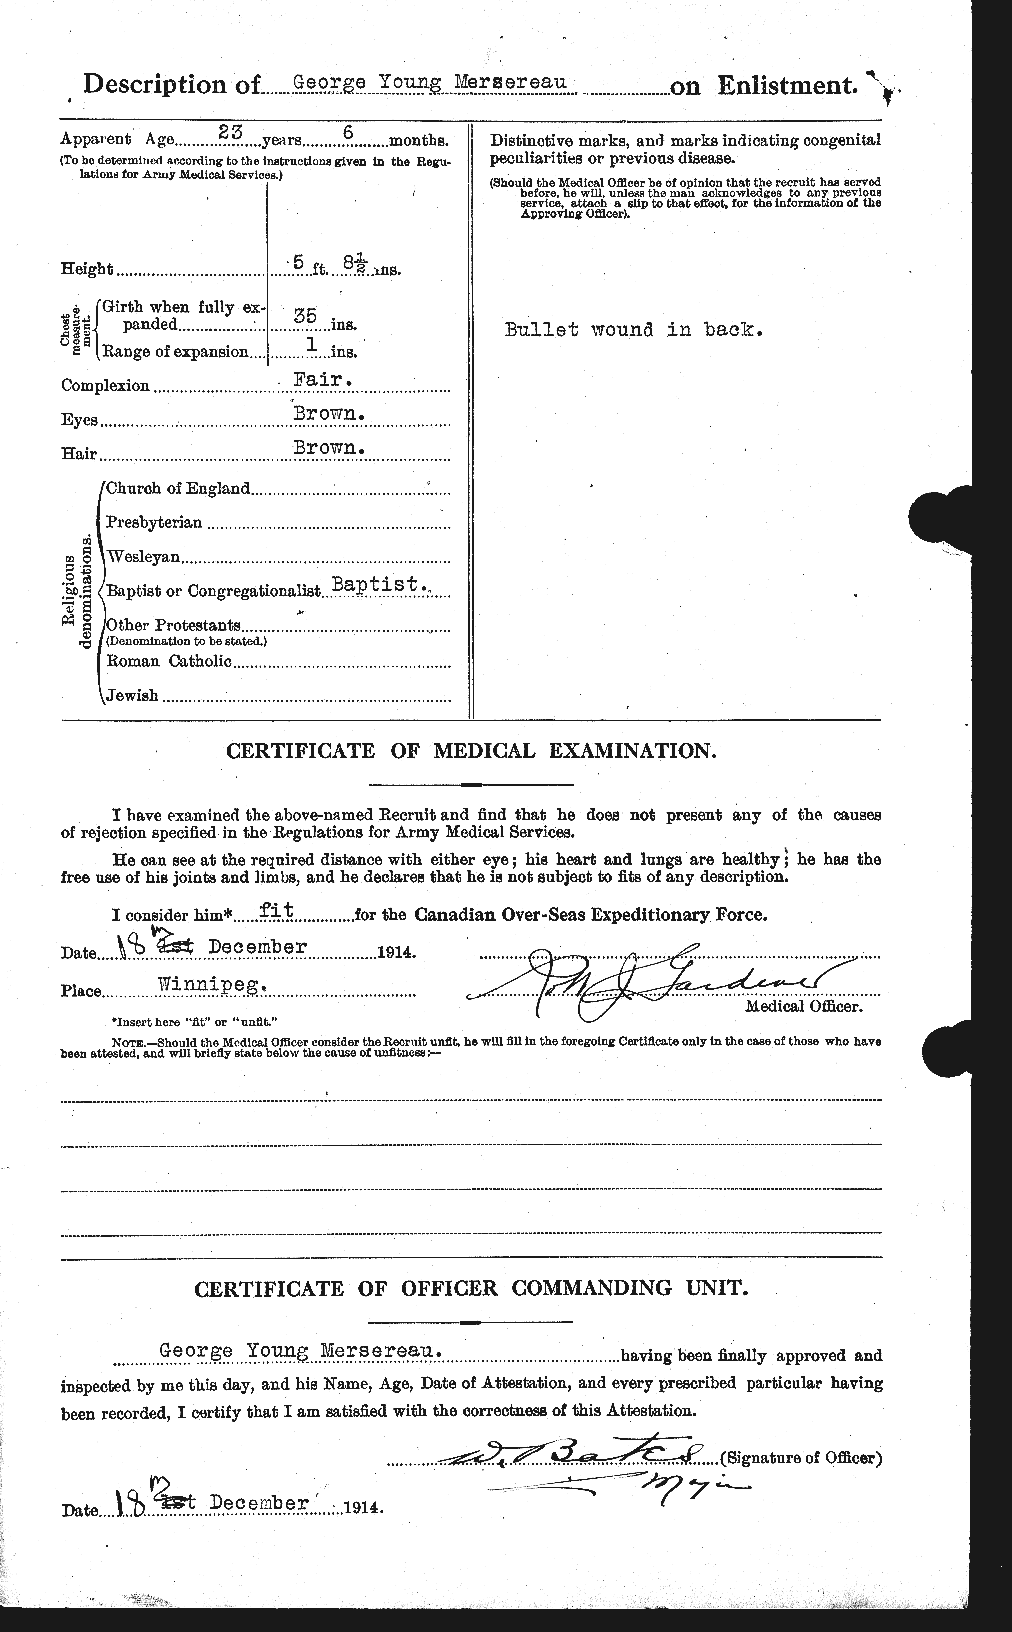 Dossiers du Personnel de la Première Guerre mondiale - CEC 490549b